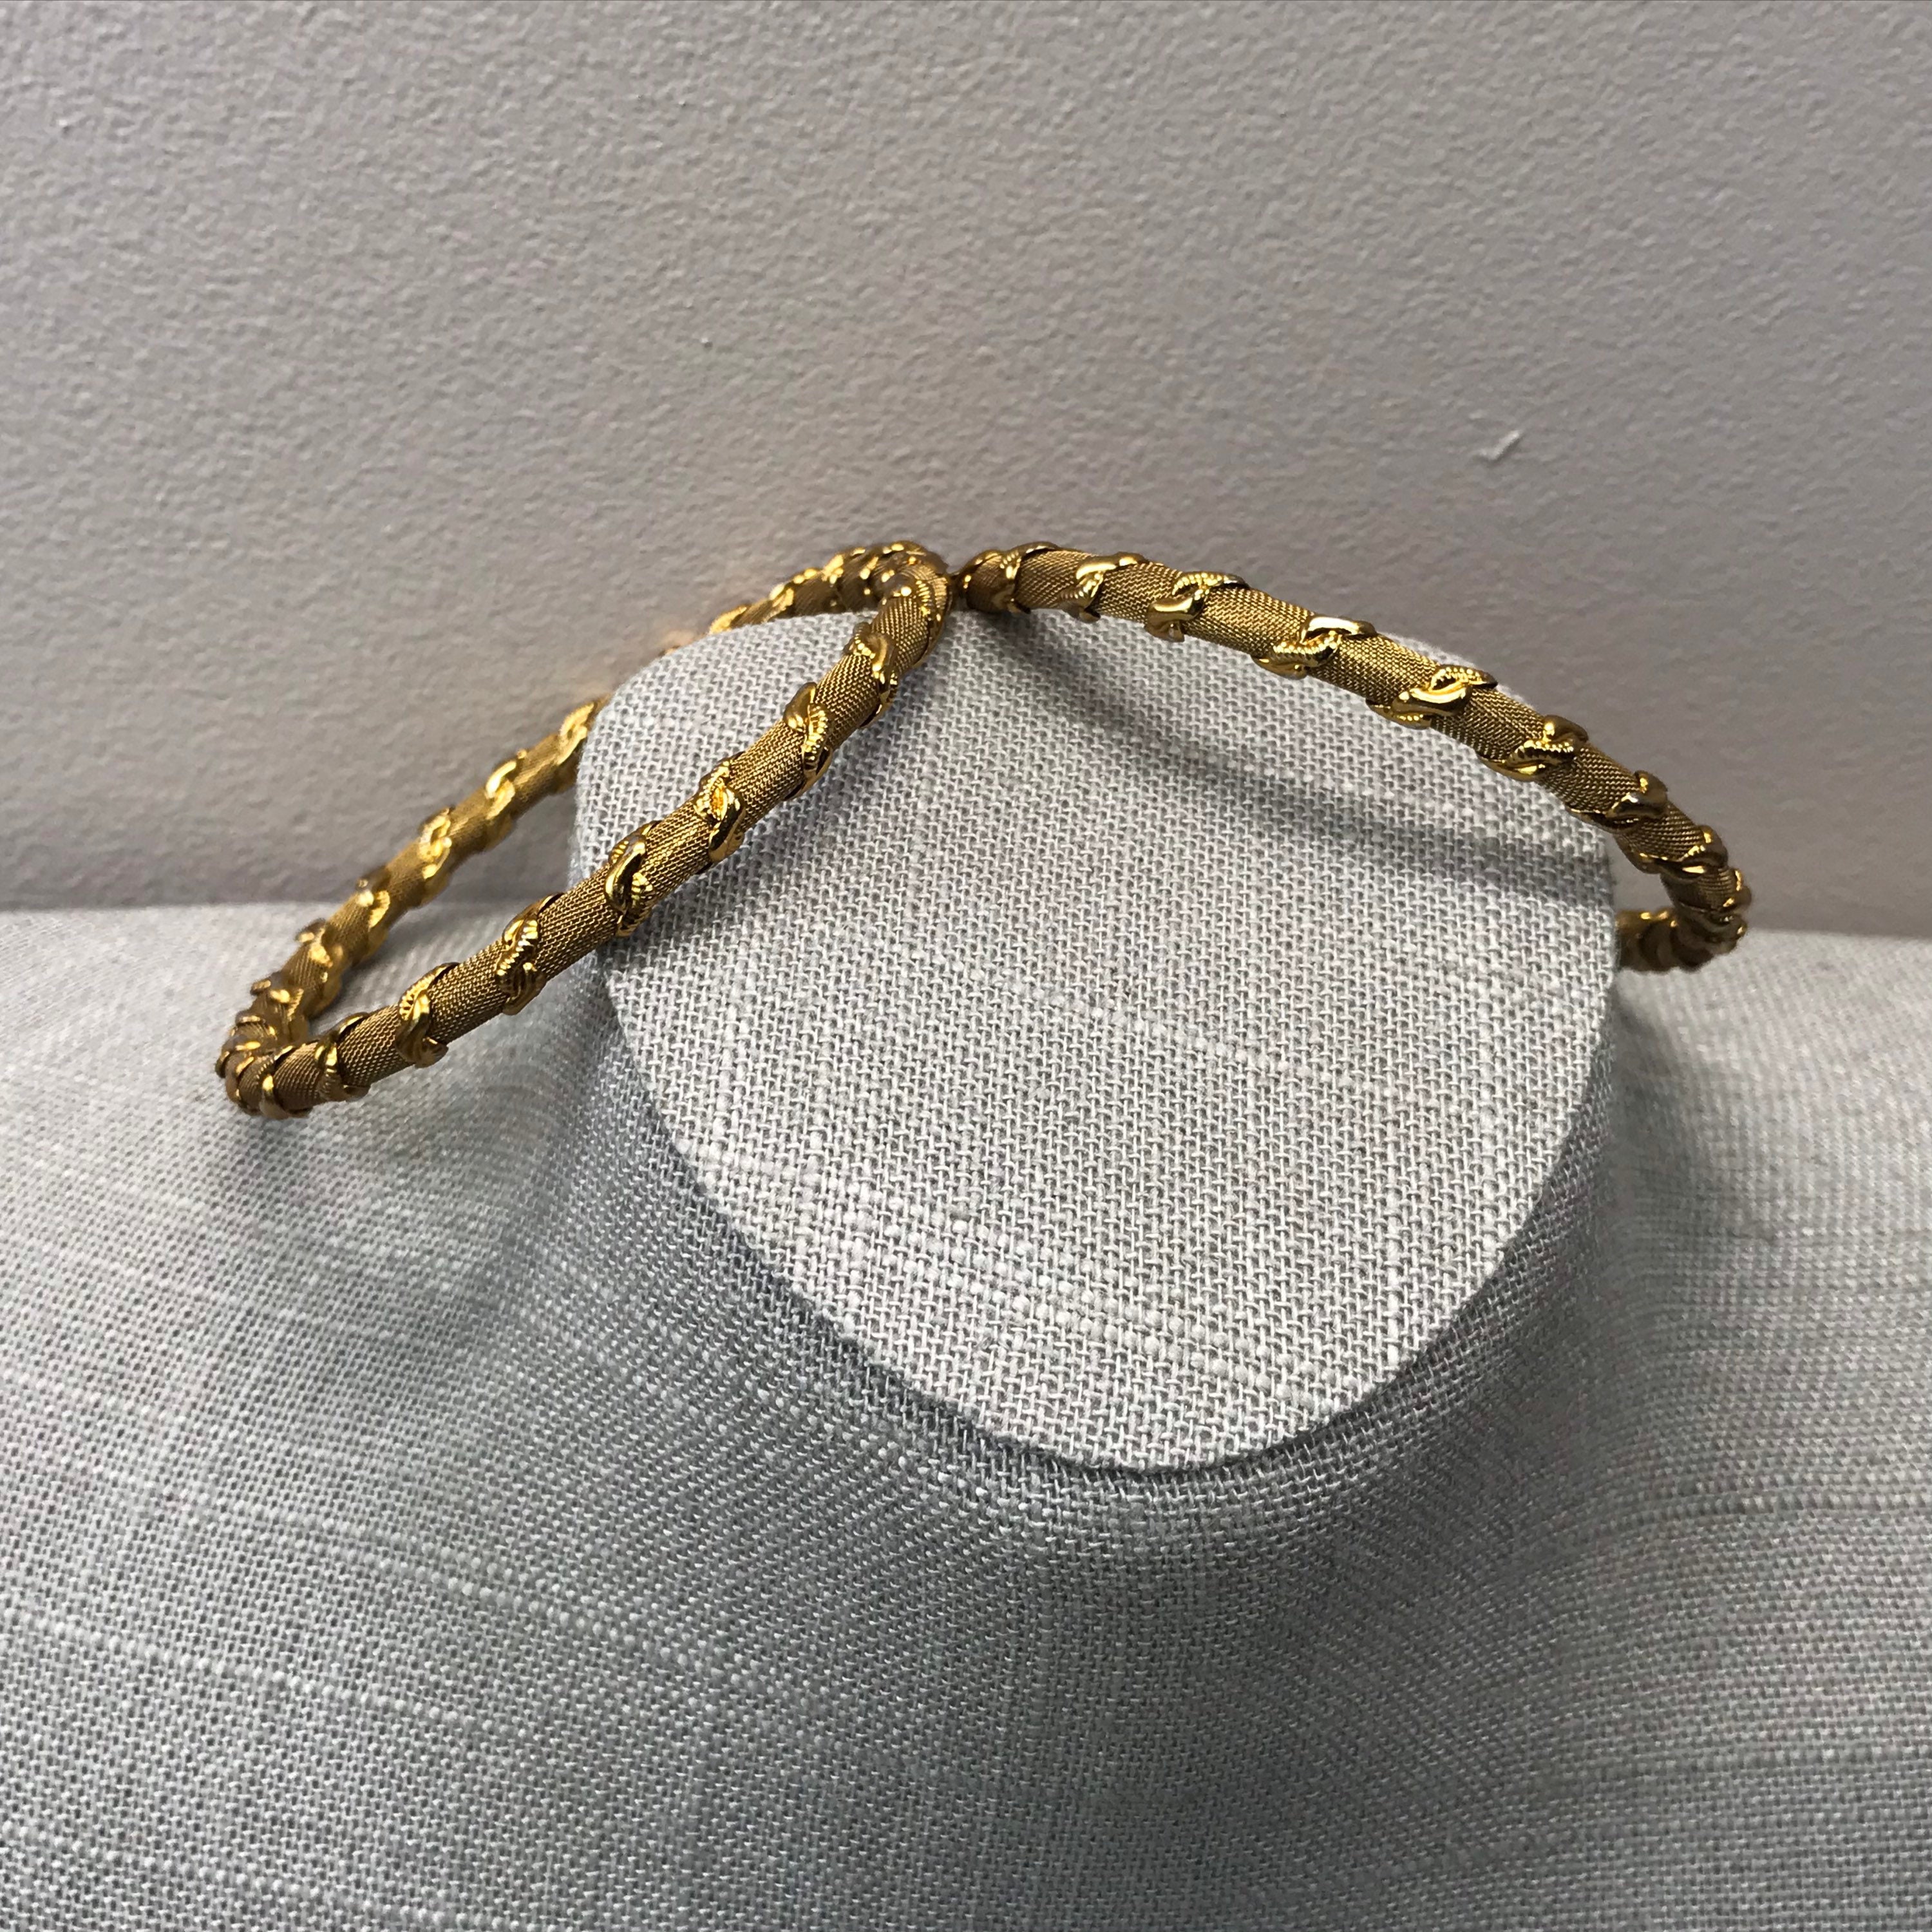 Vintage twisted mesh gold tone bangle bracelets | Etsy